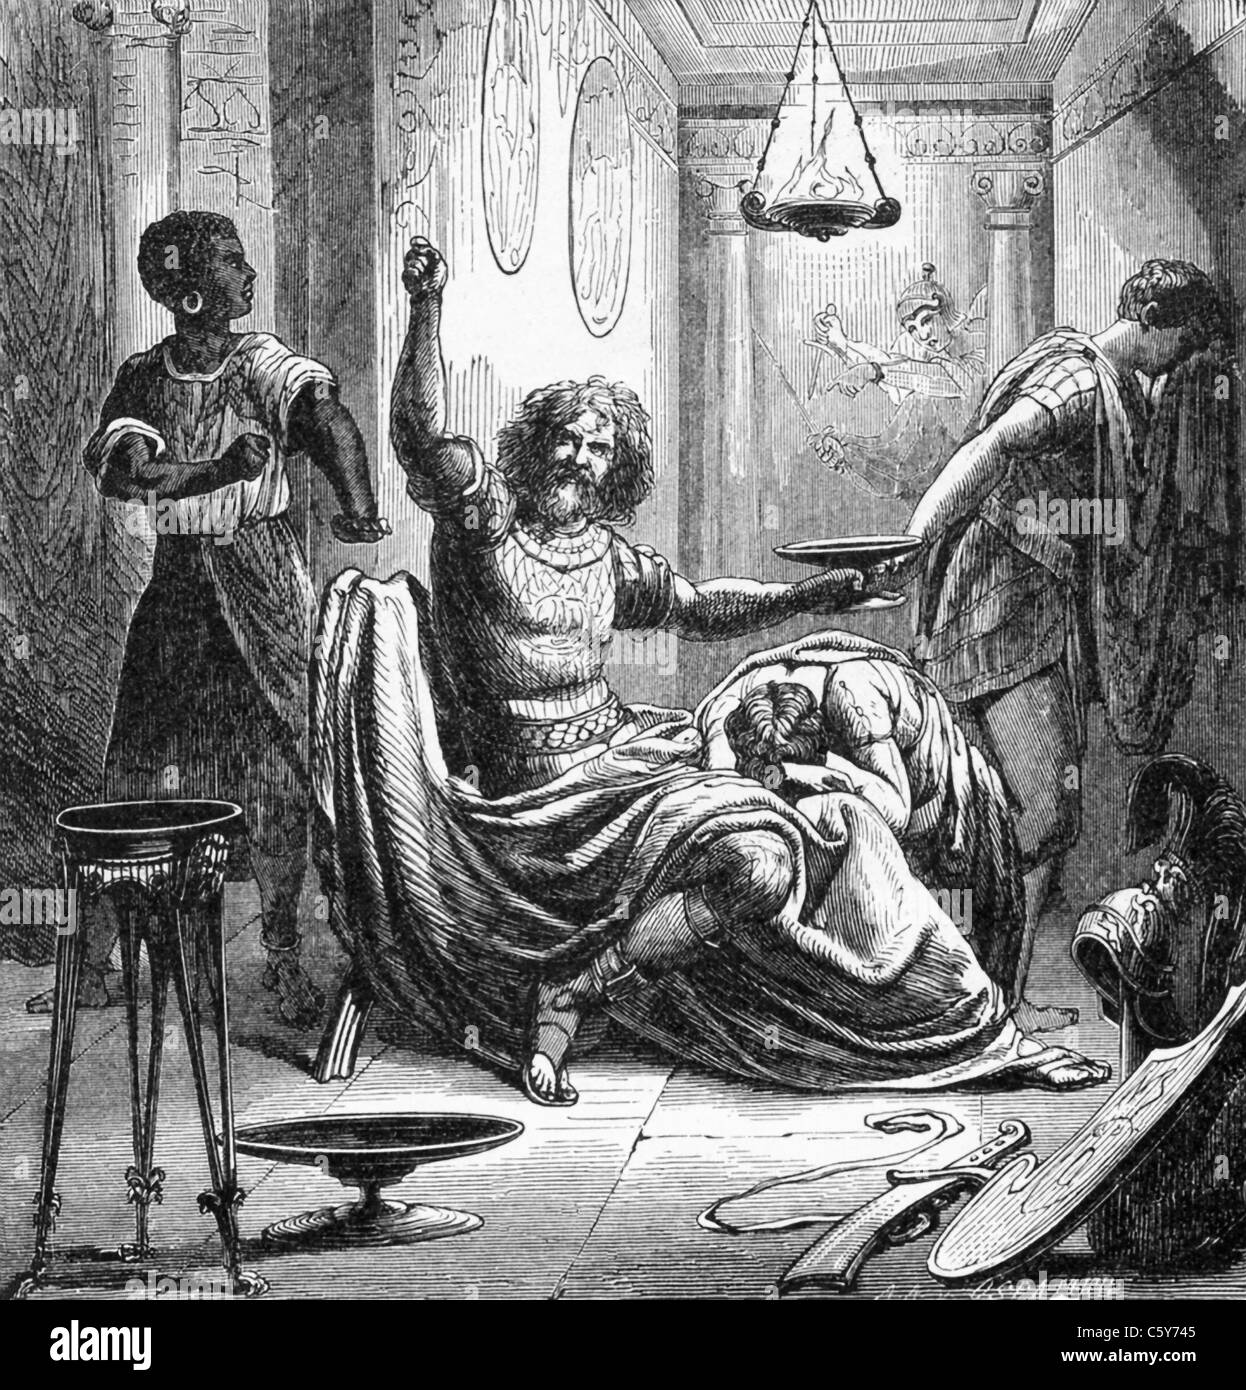 Carthaginian Hannibal nahm vergiften, dass hieß es, dass er in einer Phiole in seinen Ring zu vermeiden, fallen in römische Hände gehalten hatte. Stockfoto